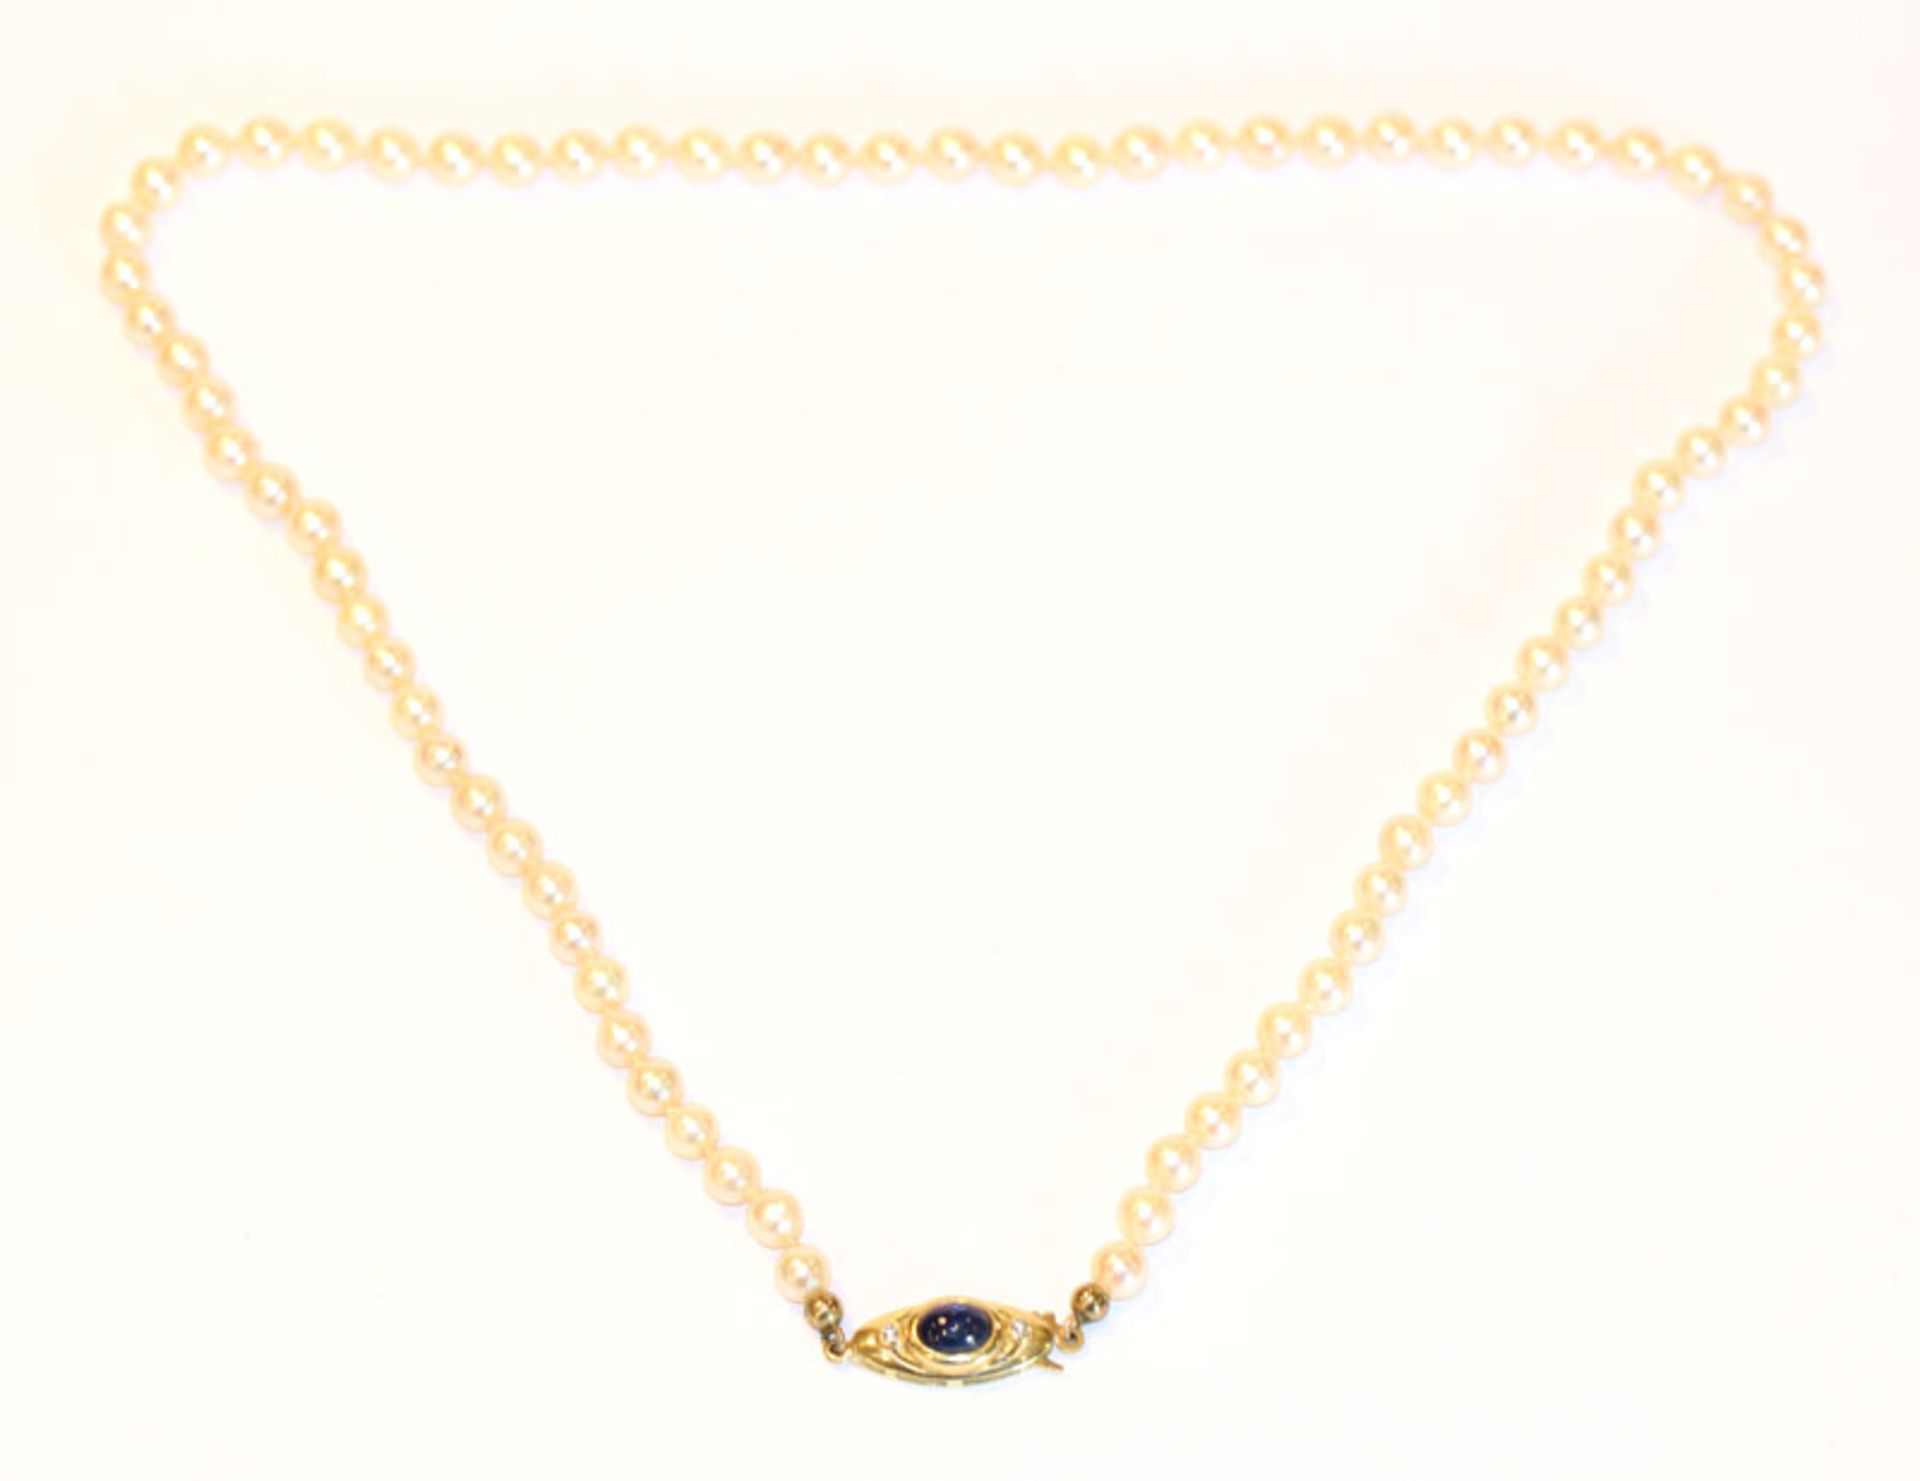 Perlenkette mit 14 k Gelbgold Schließe, besetzt mit Safir-Cabochon und 2 Brillanten, L 46 cm